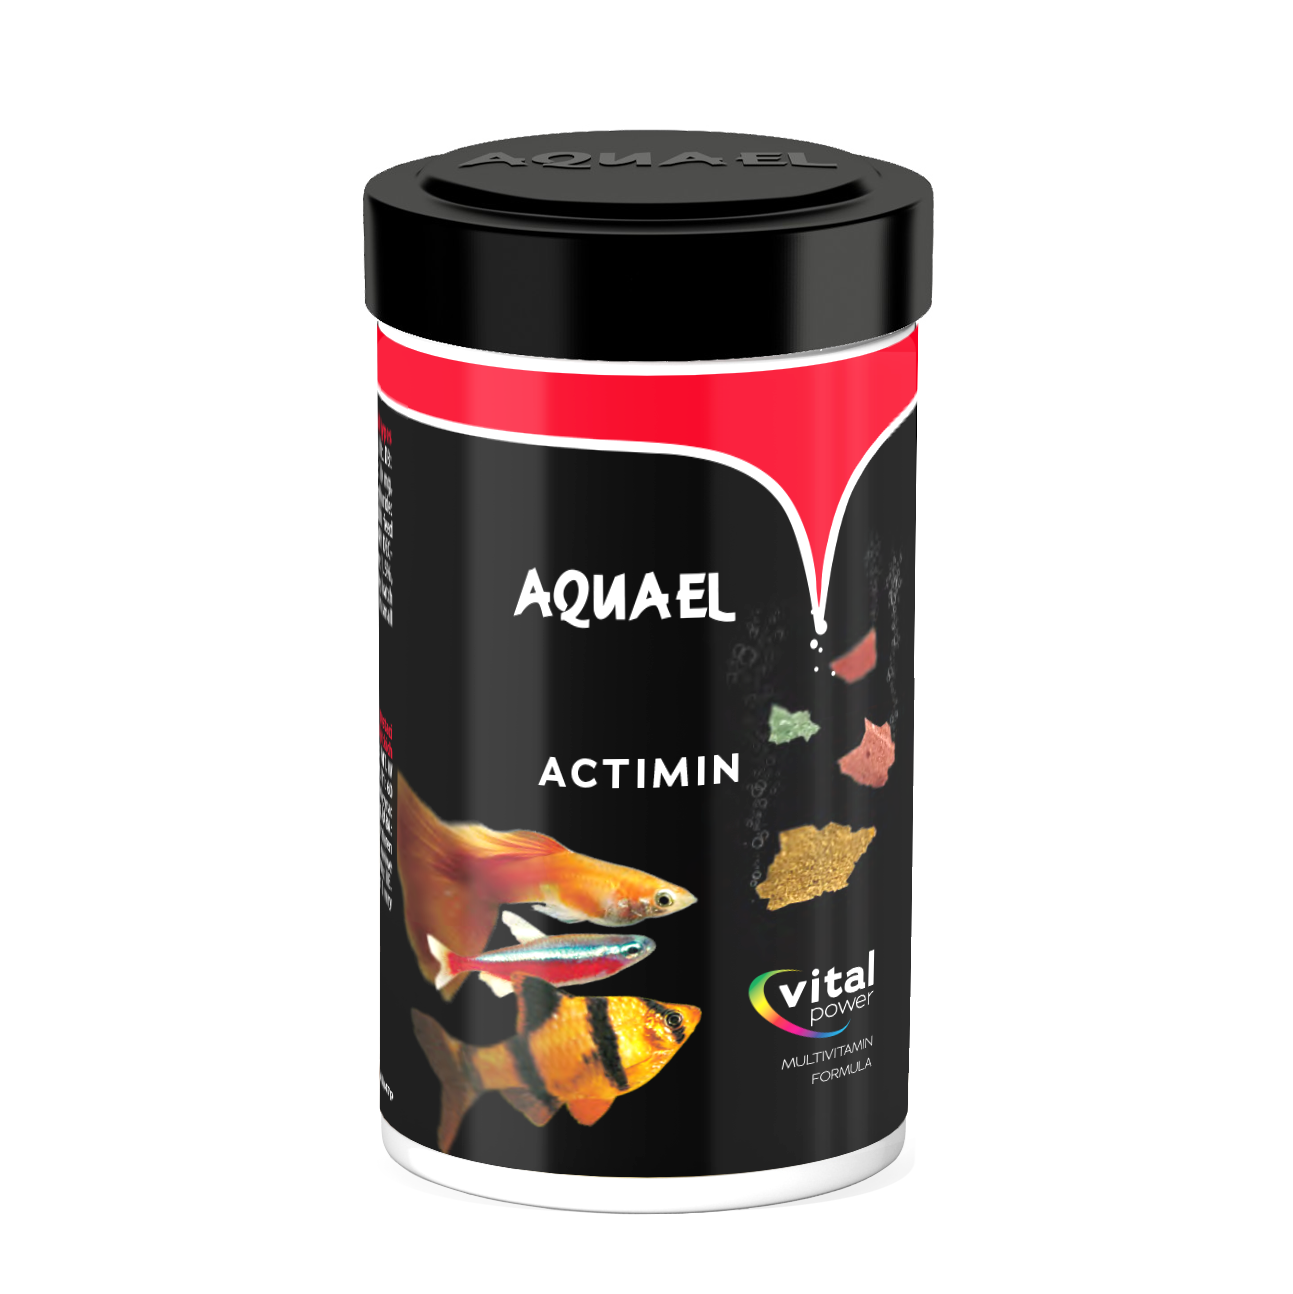 Aquael fish feed Actimin 10g